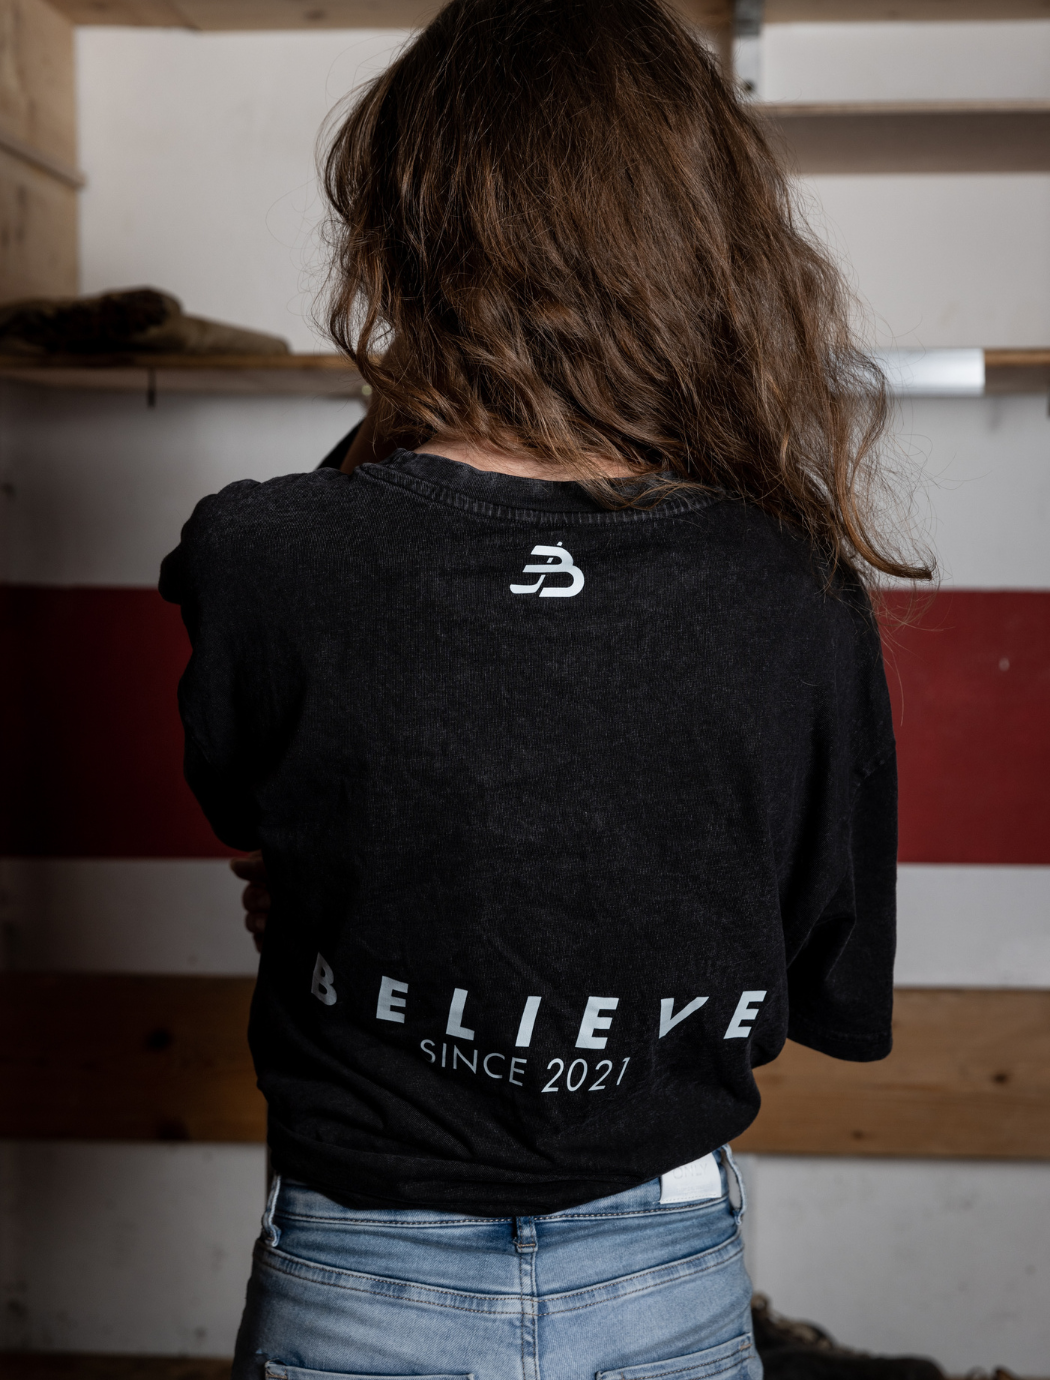 Eisblog "Believe" Unisex Acid Washed & Oversized T-Shirt